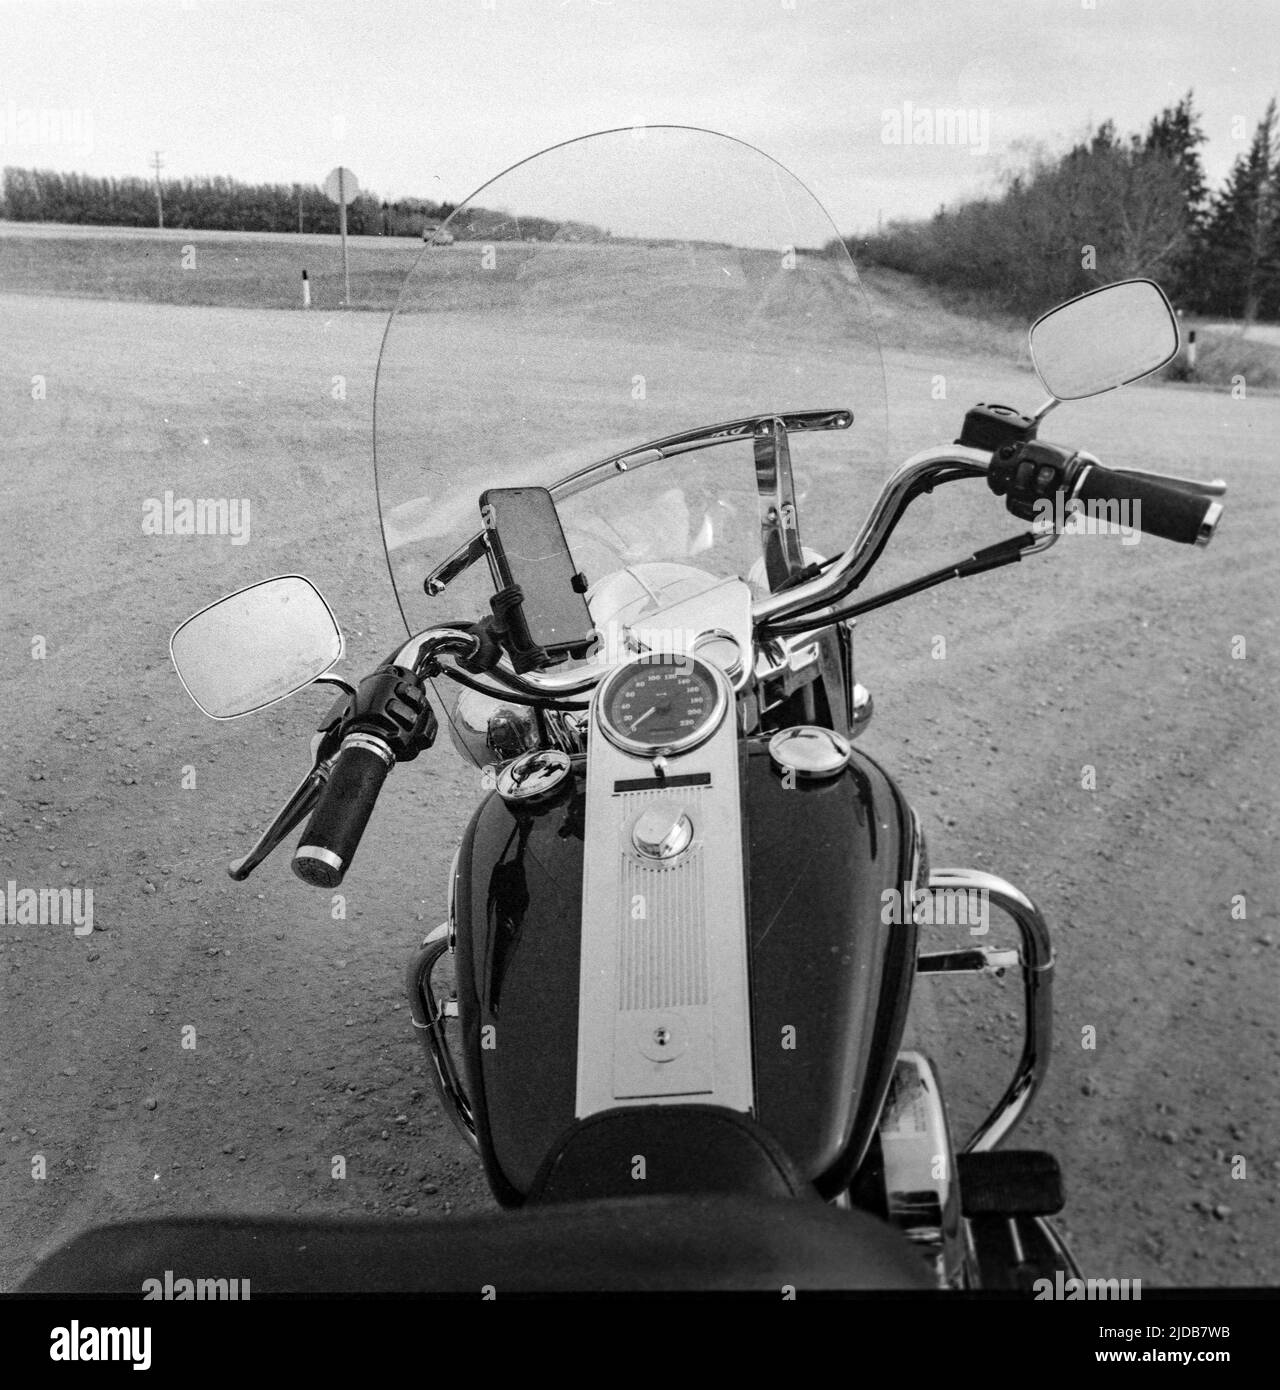 Ansicht des Lenkers, des Armaturenbretts und der Windschutzscheibe eines Motorrads, das an einer Straßenabzweigung geparkt ist, mit einem Smartphone in einer Halterung; Manitoba, Kanada Stockfoto